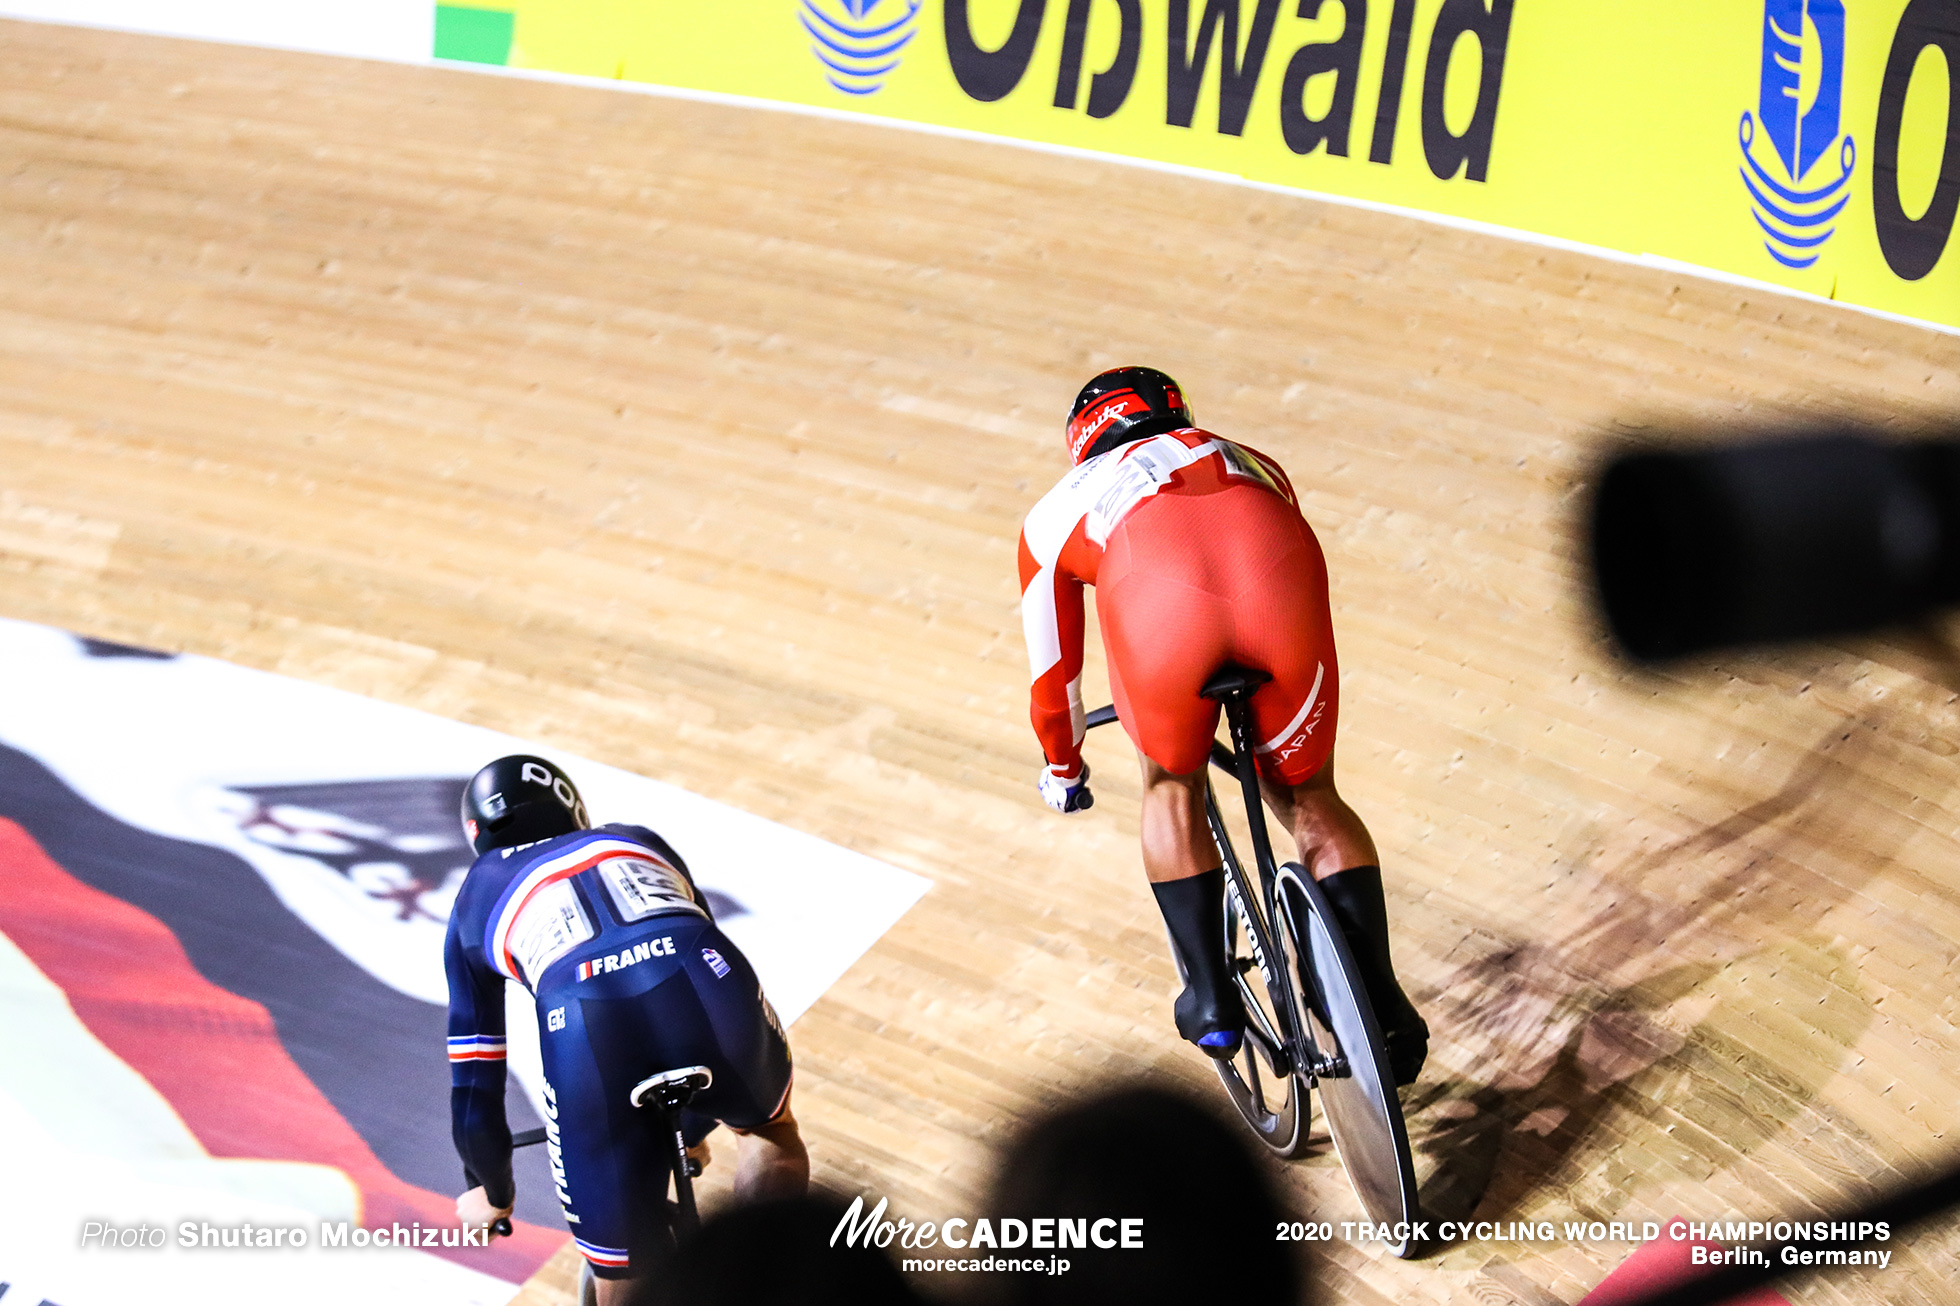 日本が獲得した4つのメダル 自転車競技オリンピックメダリストを振り返る／メダリストの軌跡 | More CADENCE - 自転車トラック競技